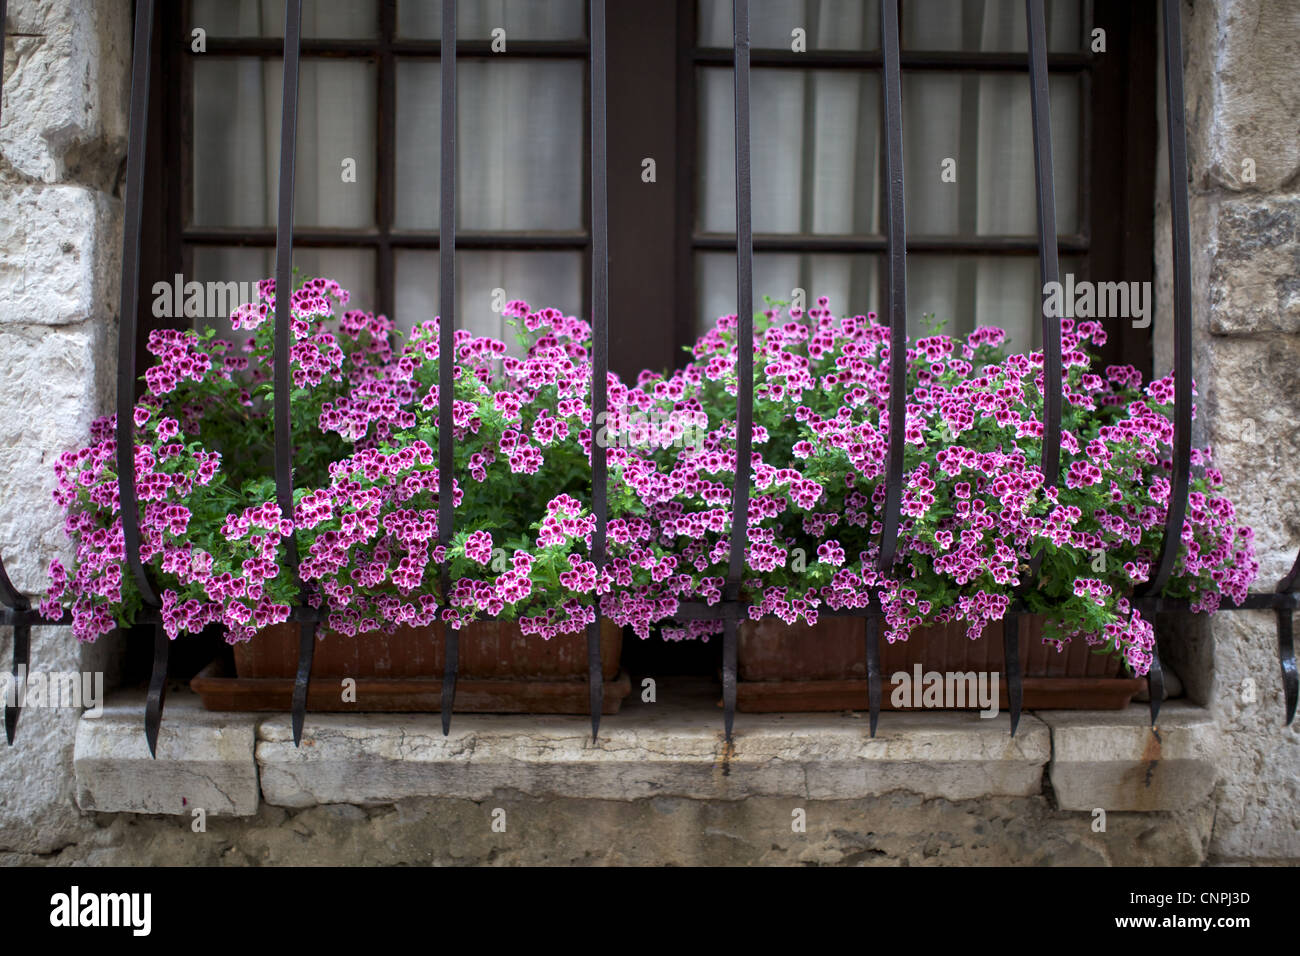 Fenster Blumenkasten Blumenkasten Pflanzgefäße Stockfotos und -bilder  Kaufen - Alamy